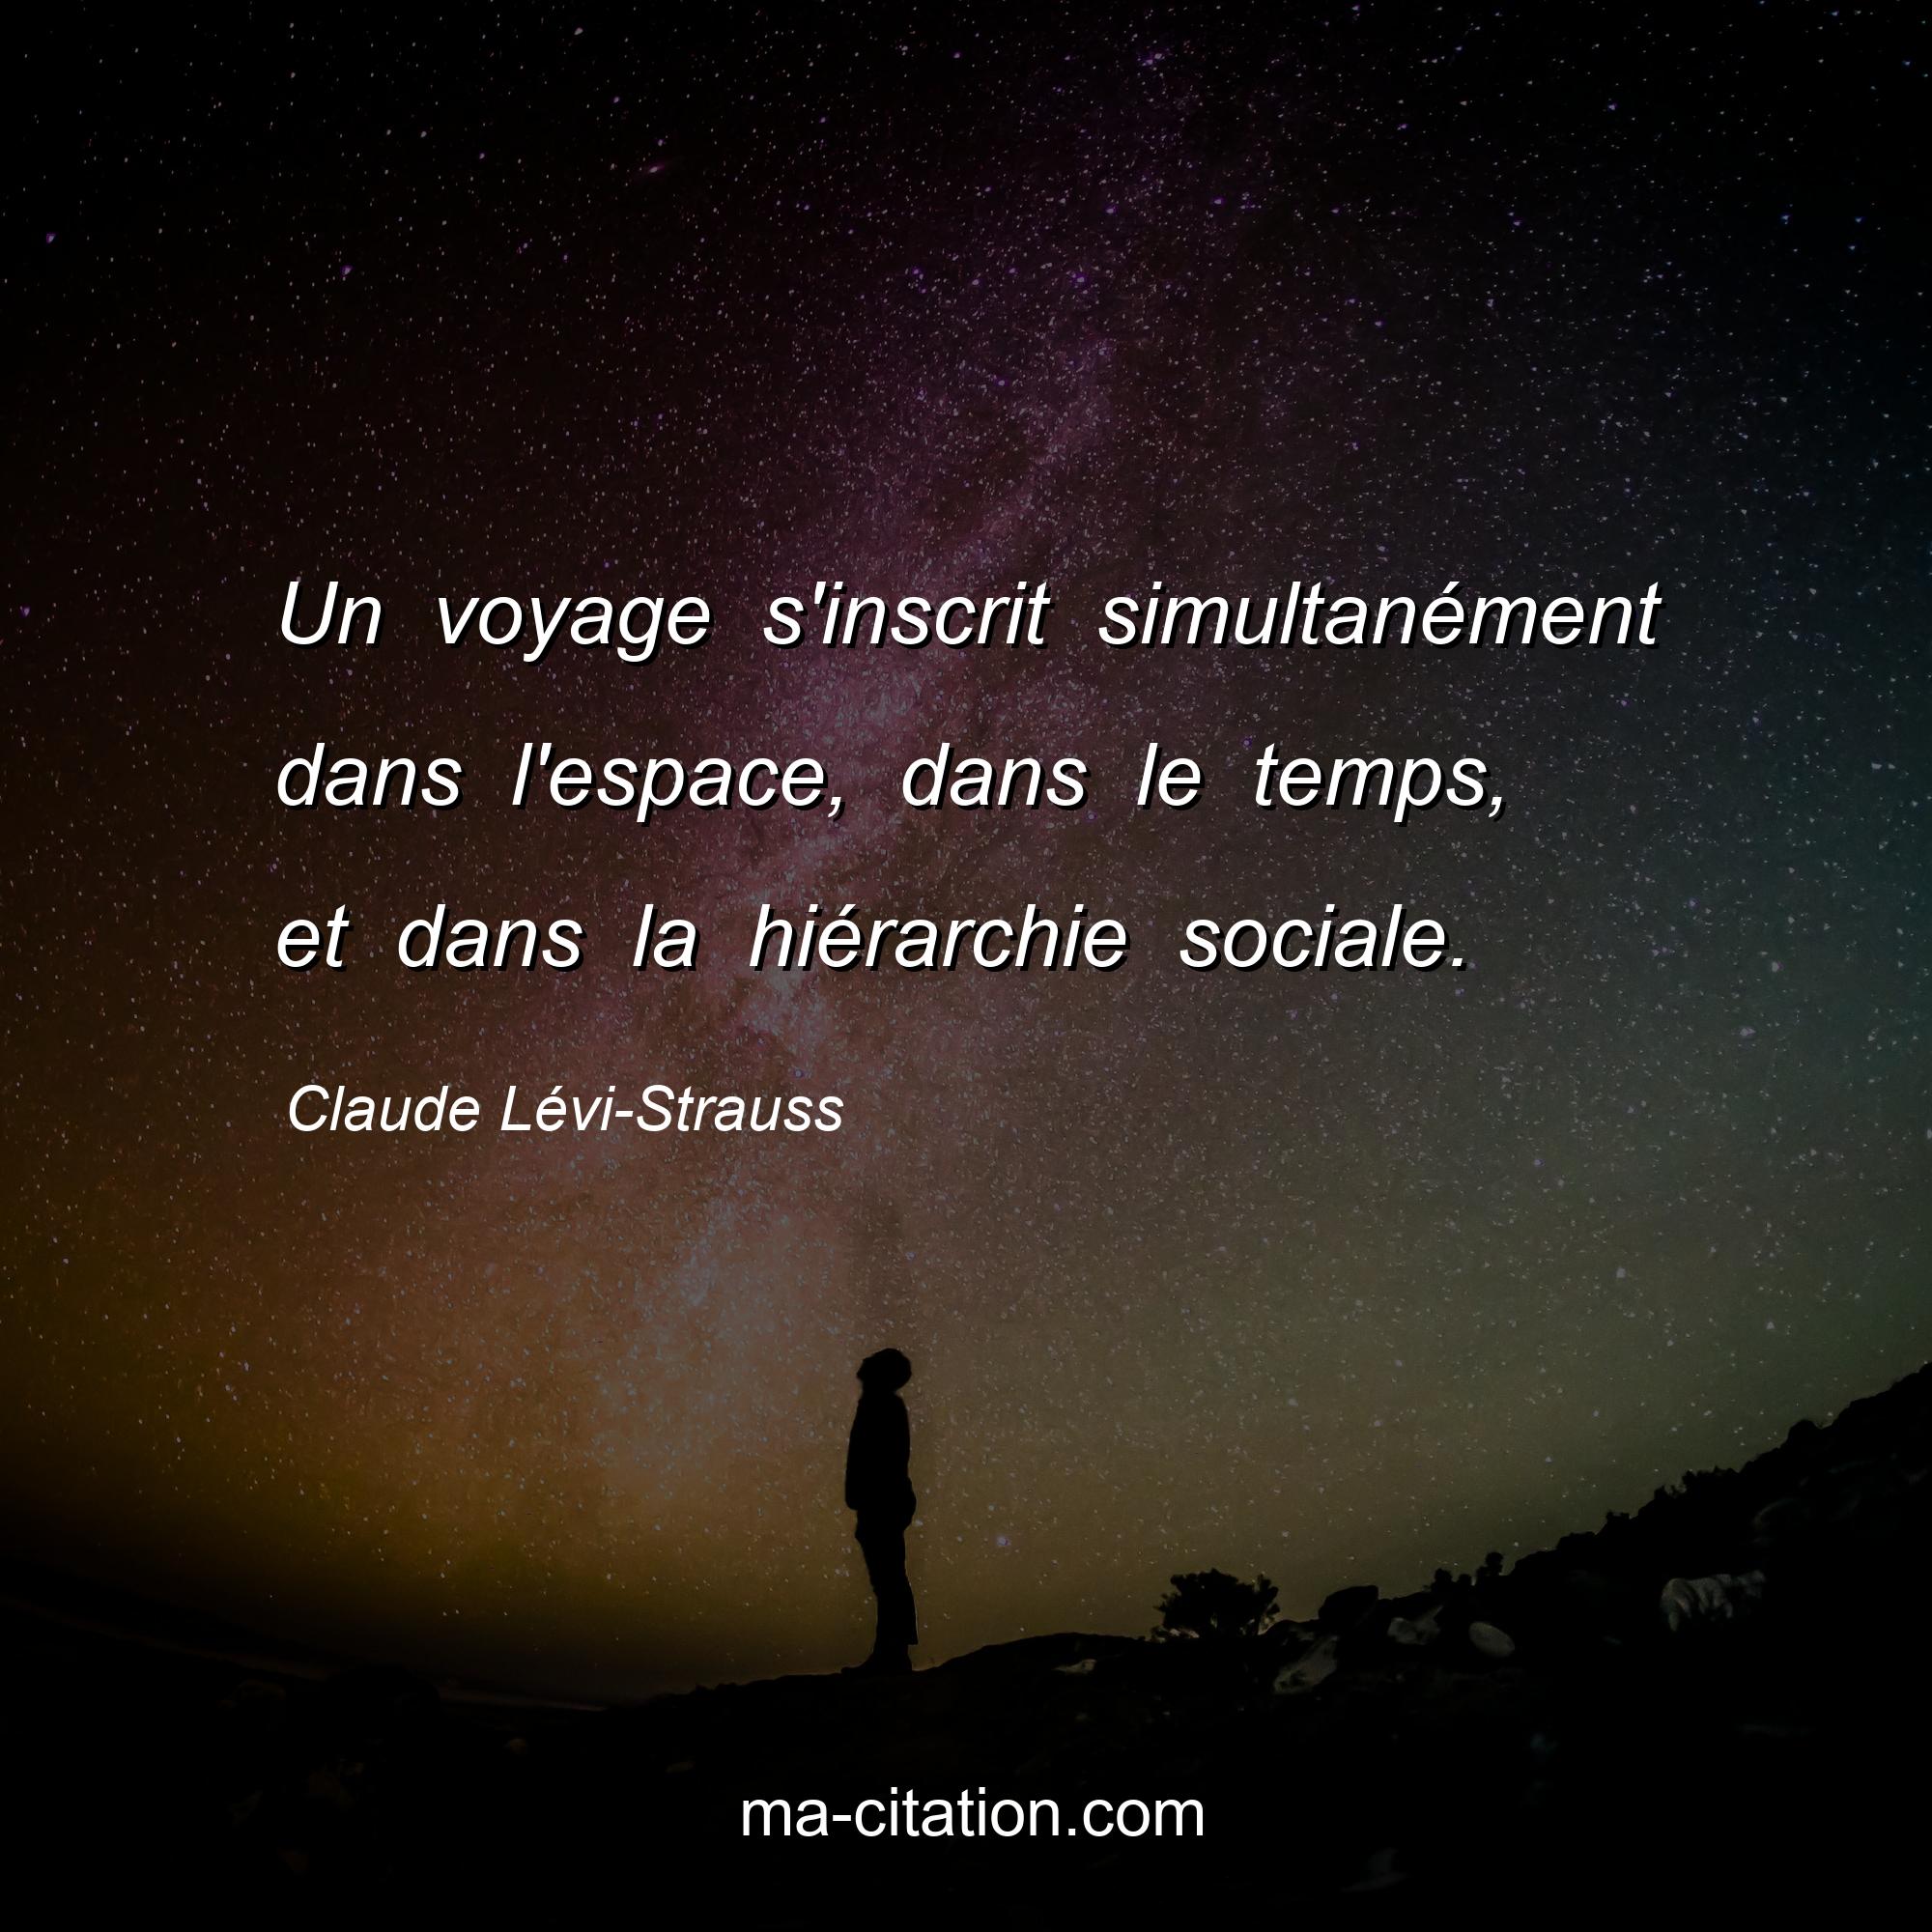 Claude Lévi-Strauss : Un voyage s'inscrit simultanément dans l'espace, dans le temps, et dans la hiérarchie sociale.